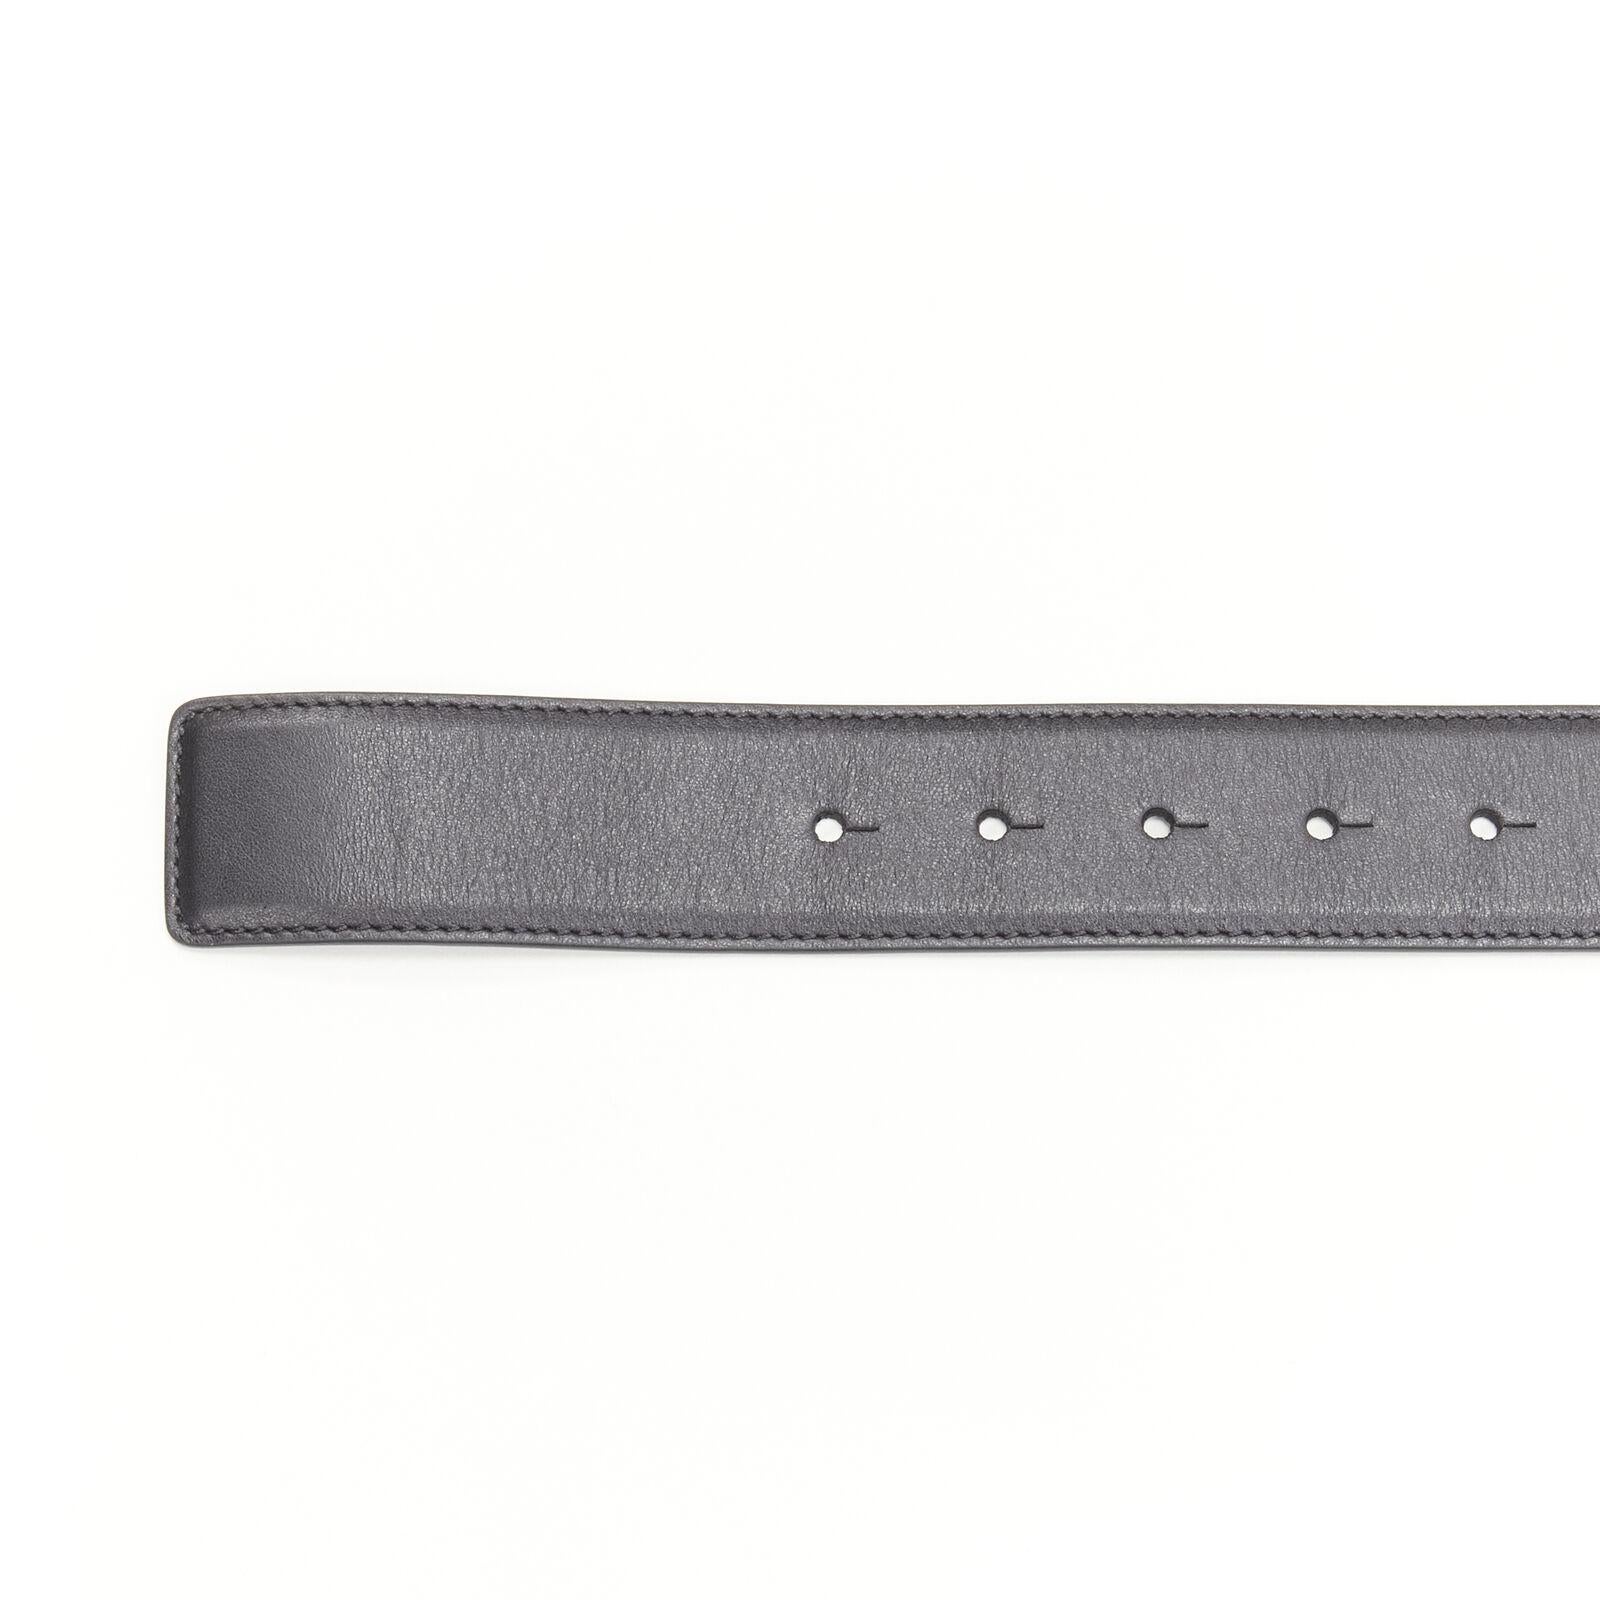 new VERSACE La Medusa ruthenium silver buckle black leather belt 115cm 44-48